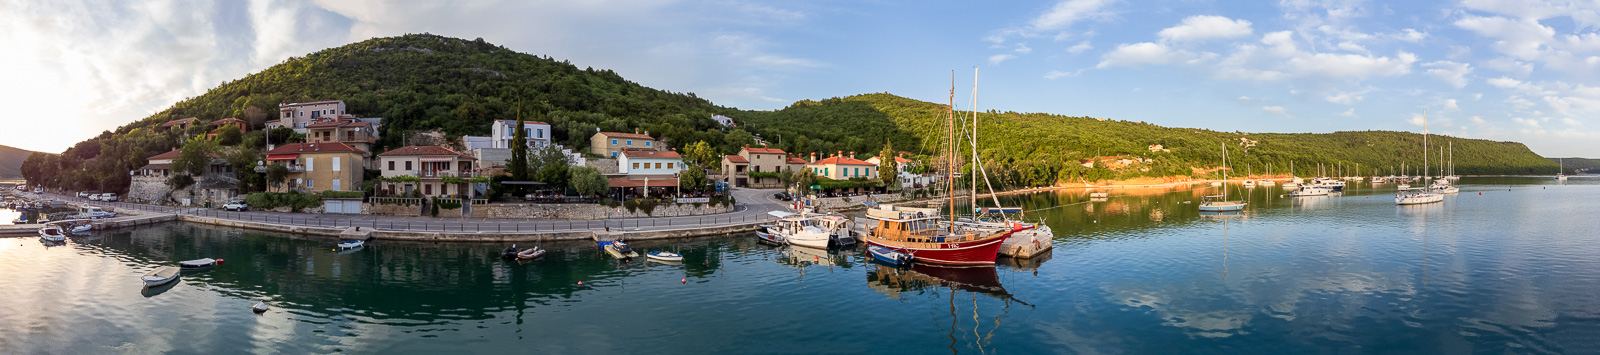 Boot huren Kroatië, Trget, Istrië